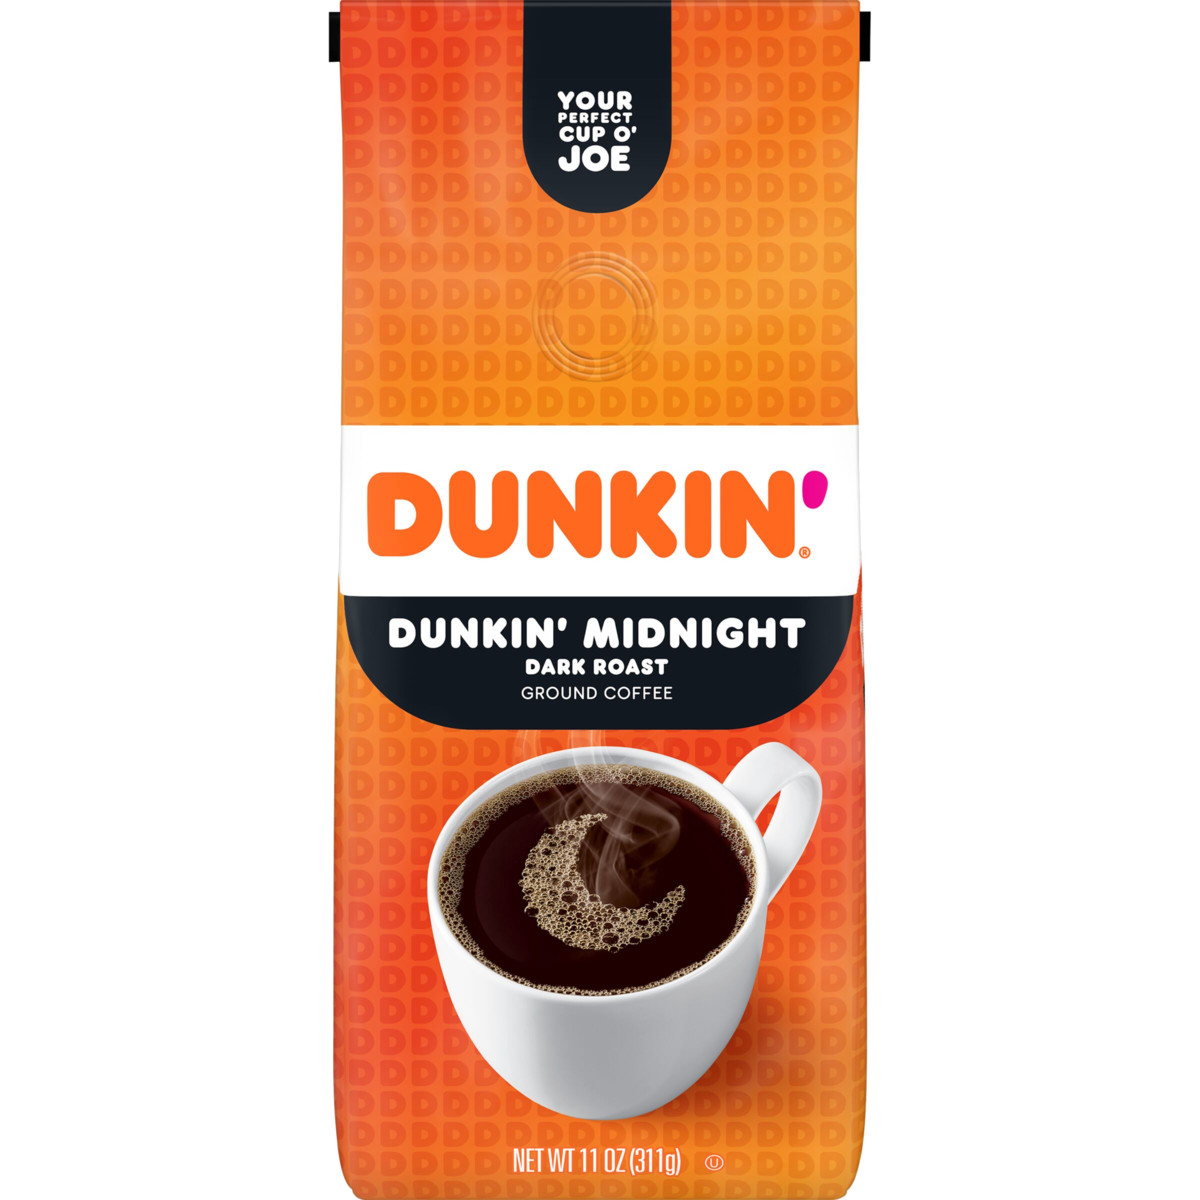 Dunkin’ Midnight Dark Roast Ground Coffee